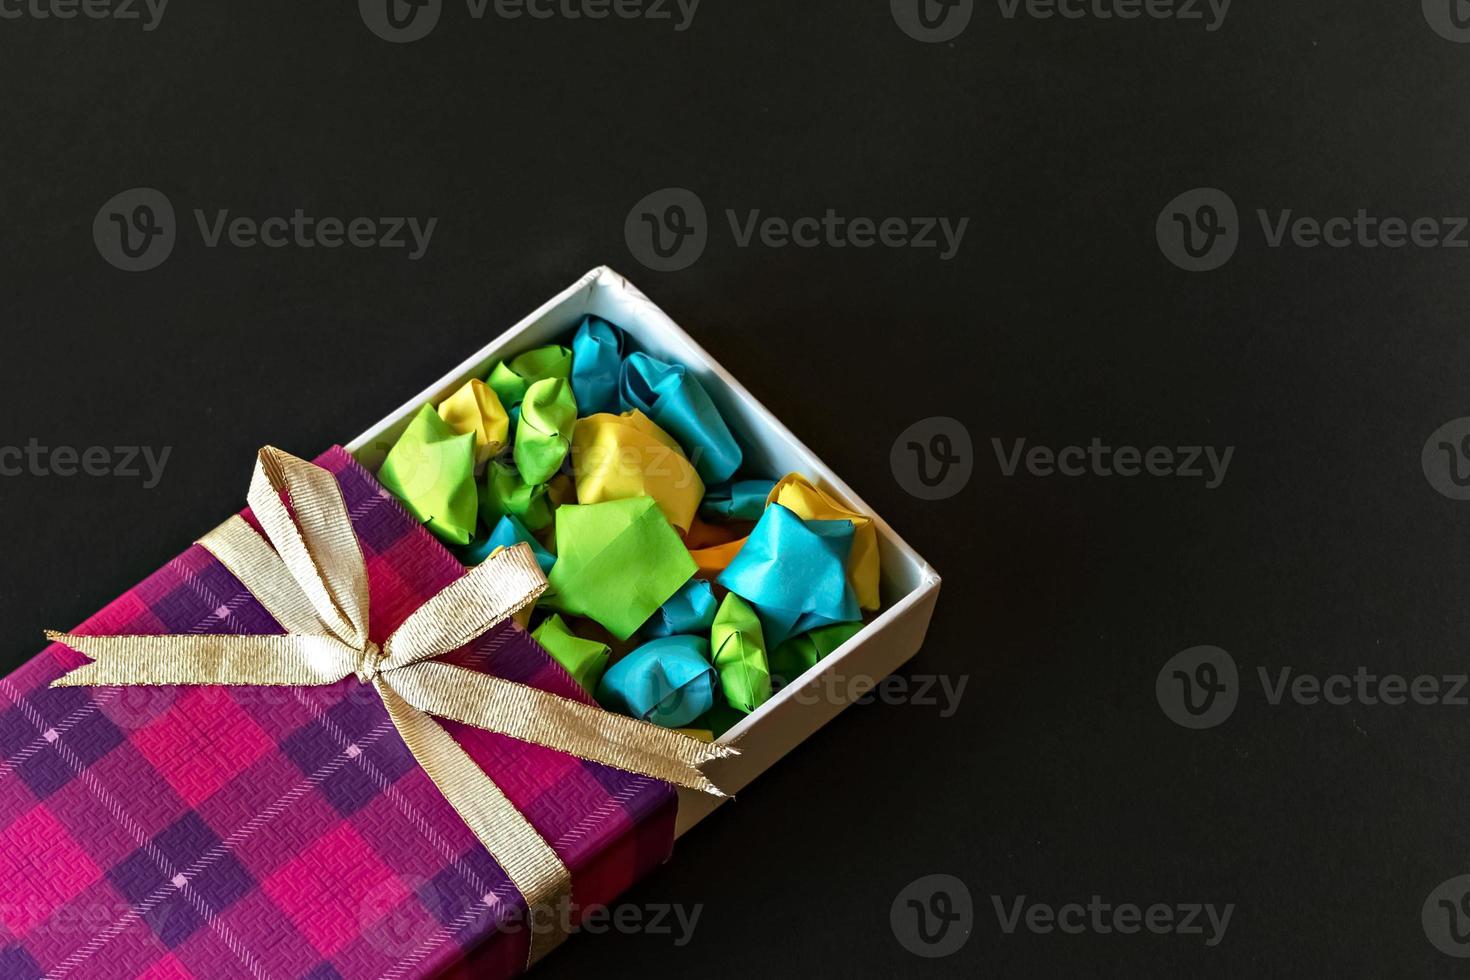 confezione regalo colorata con fiocco in raso con stelle di carta origami su sfondo nero. regali per le feste. foto